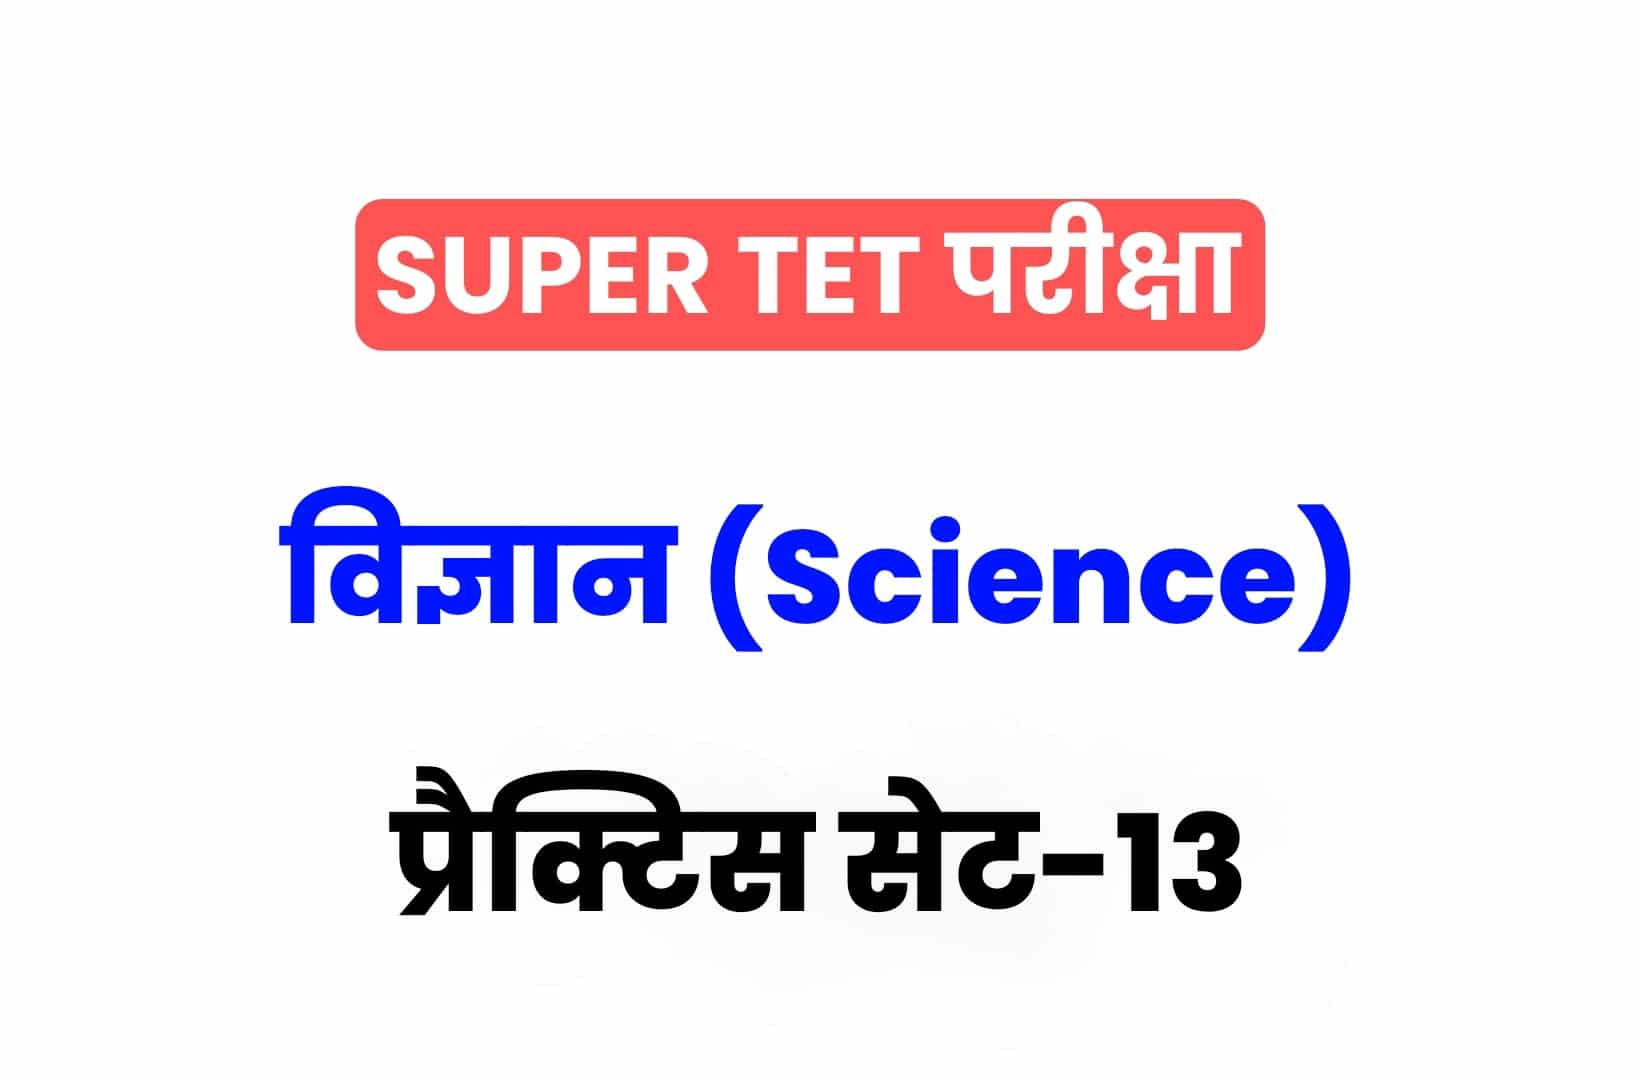 SUPER TET 2022 Science प्रैक्टिस सेट 13: विज्ञान के 15 ऐसे सवाल जो आगामी सुपर टेट परीक्षा में पूछे जा सकते हैं, जरूर देखें